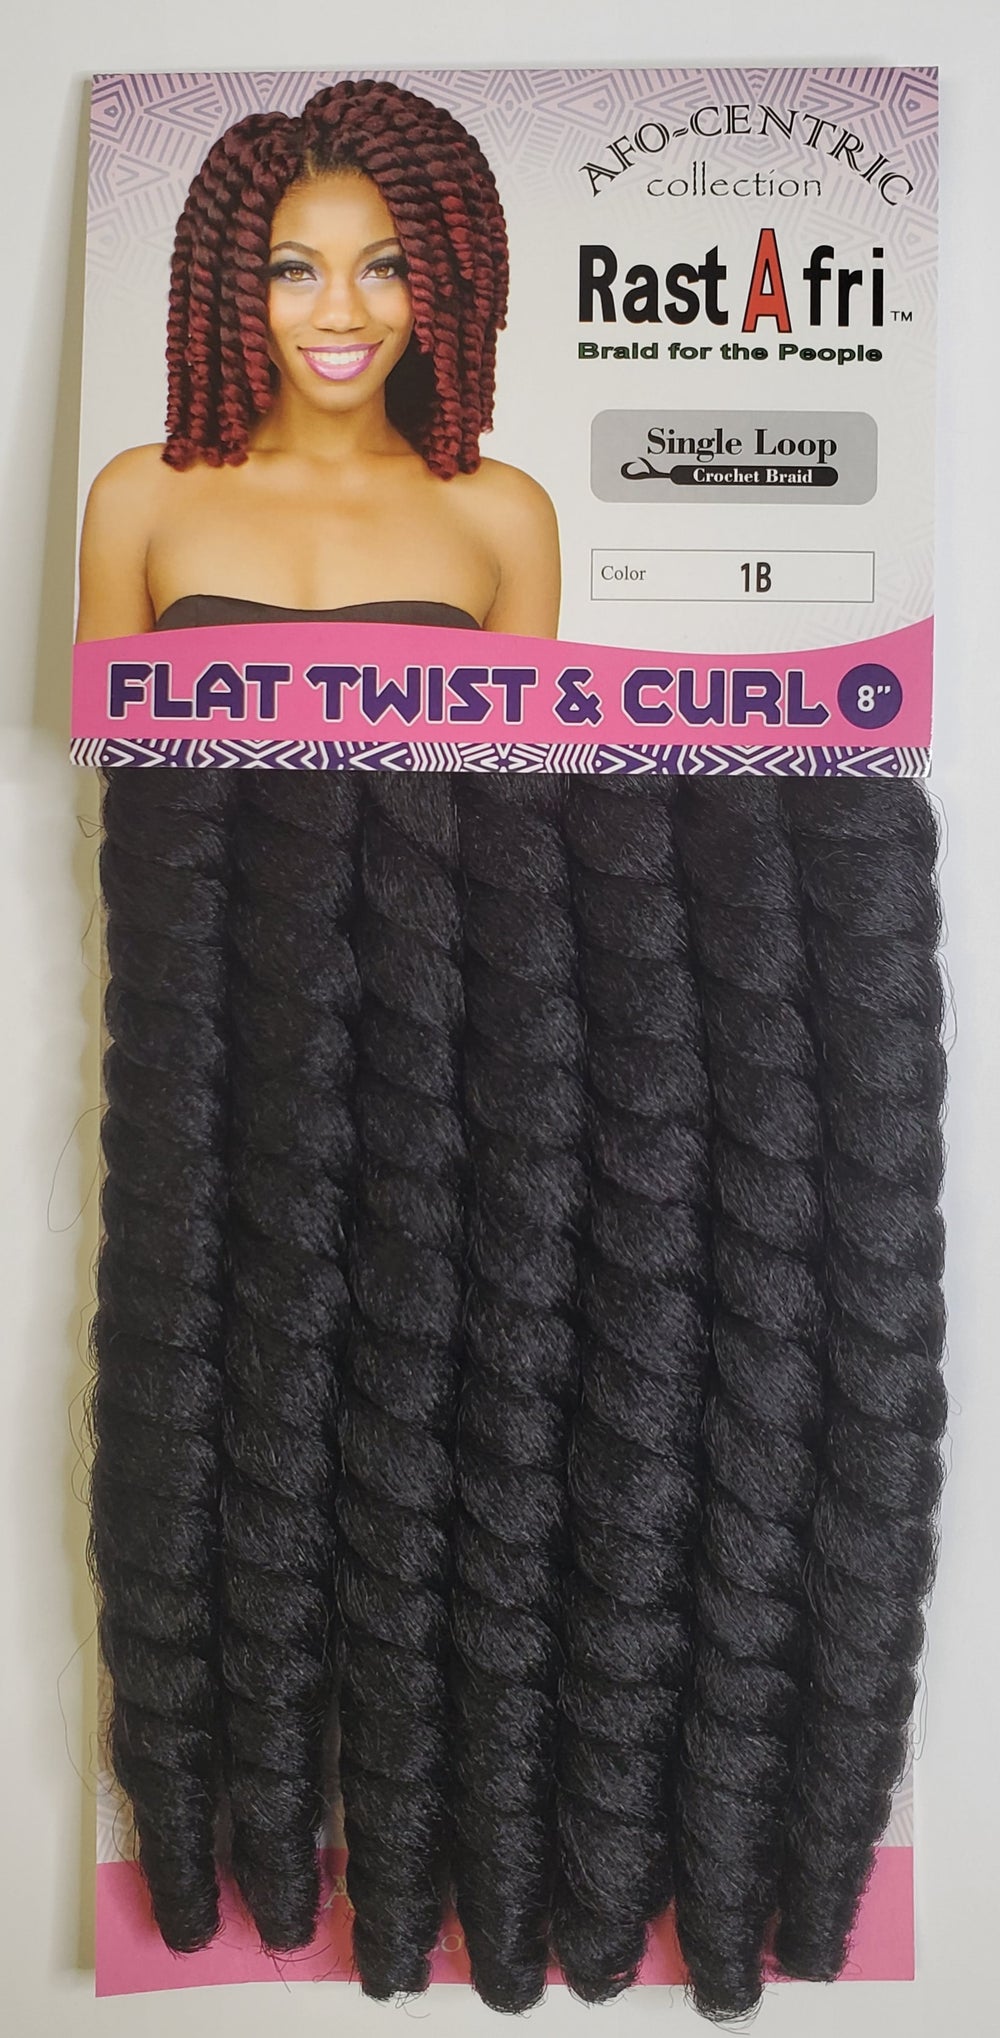 Flat twist & curl